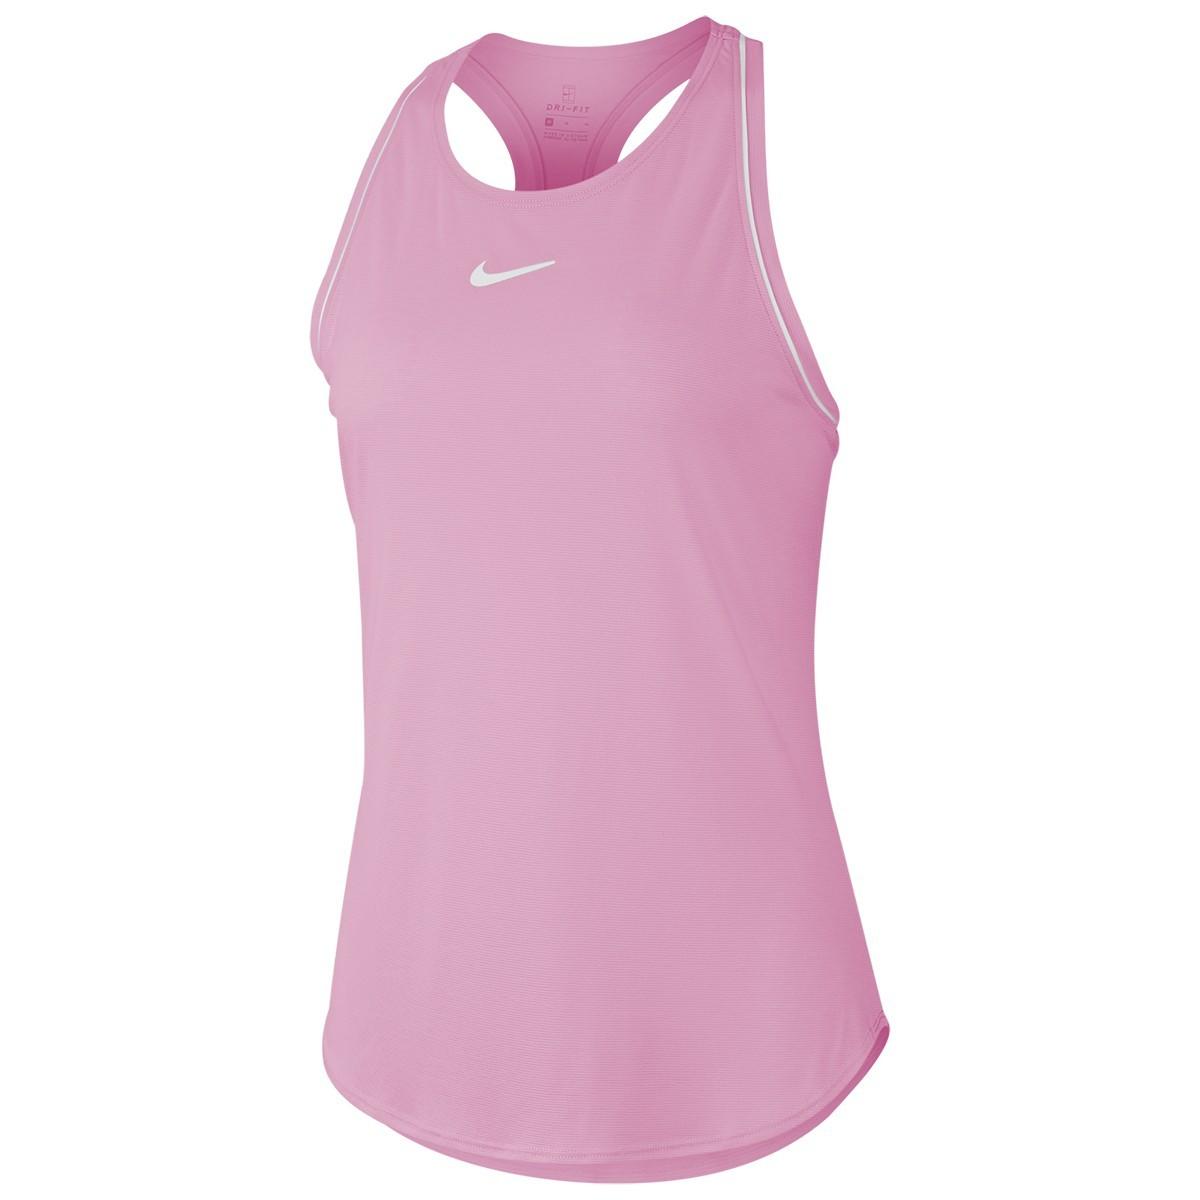 Теннисная майка детская Nike Court Girls Dry Tank pink rise/white